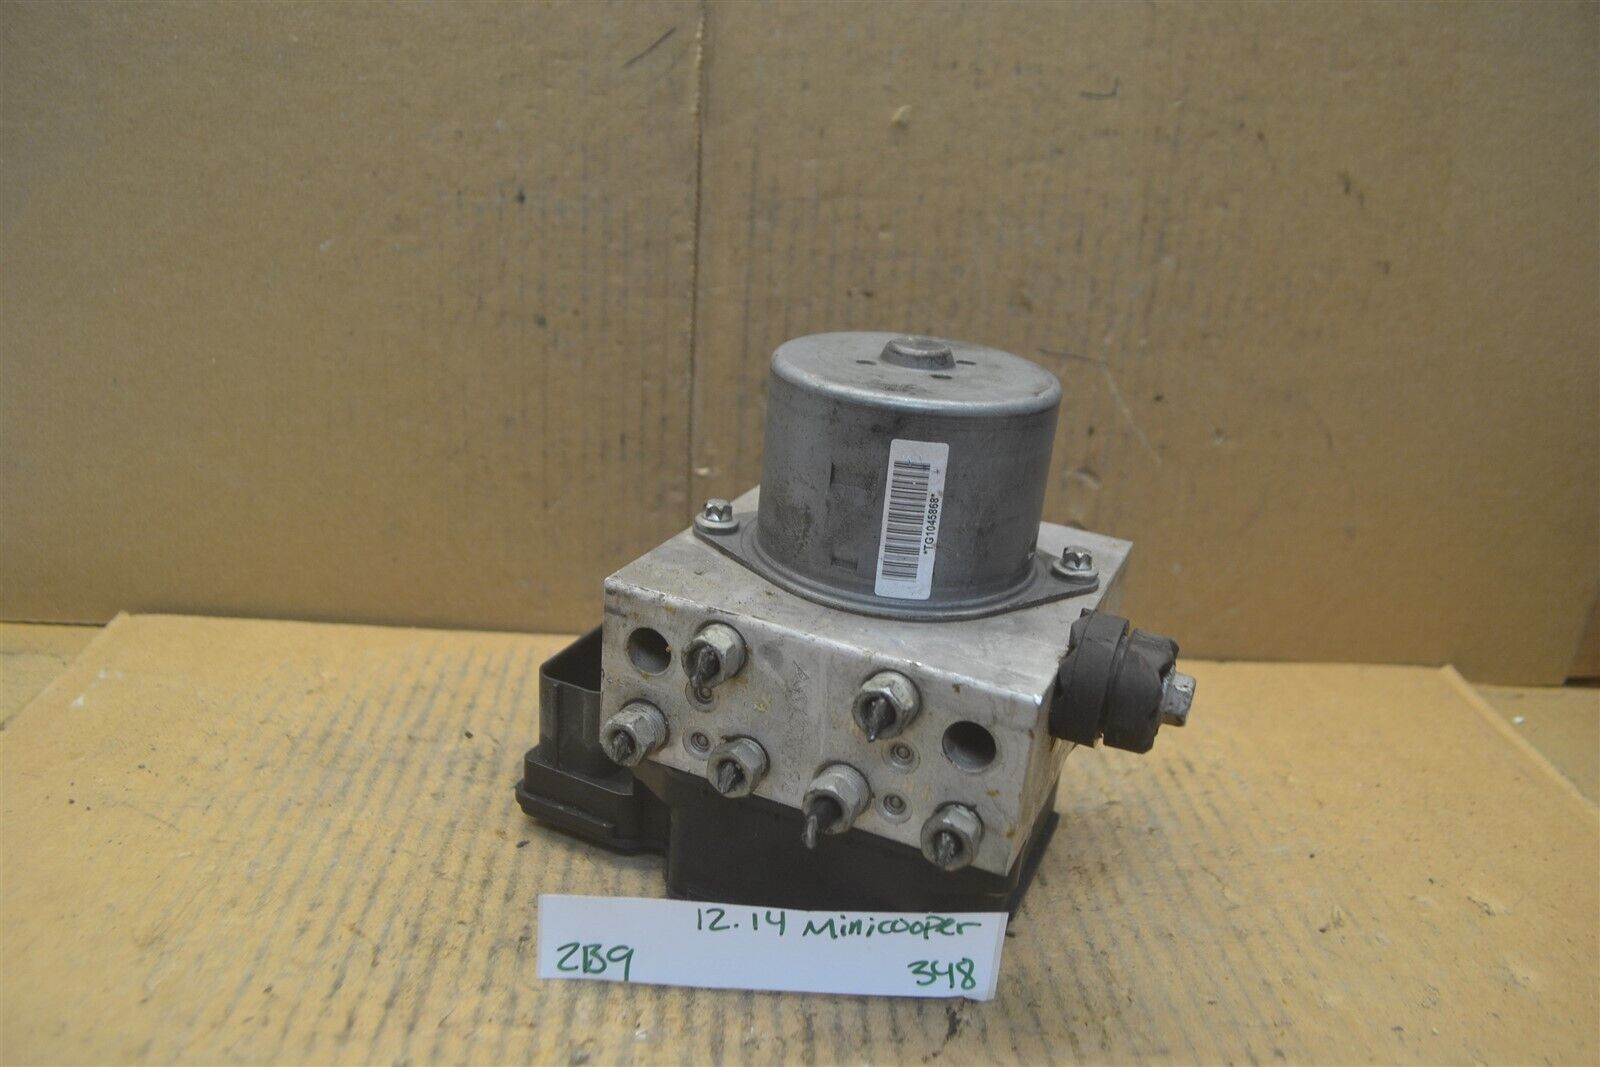 12-14 Mini Cooper ABS Pump Control OEM 6796698 Module 348-2b9 - $22.99